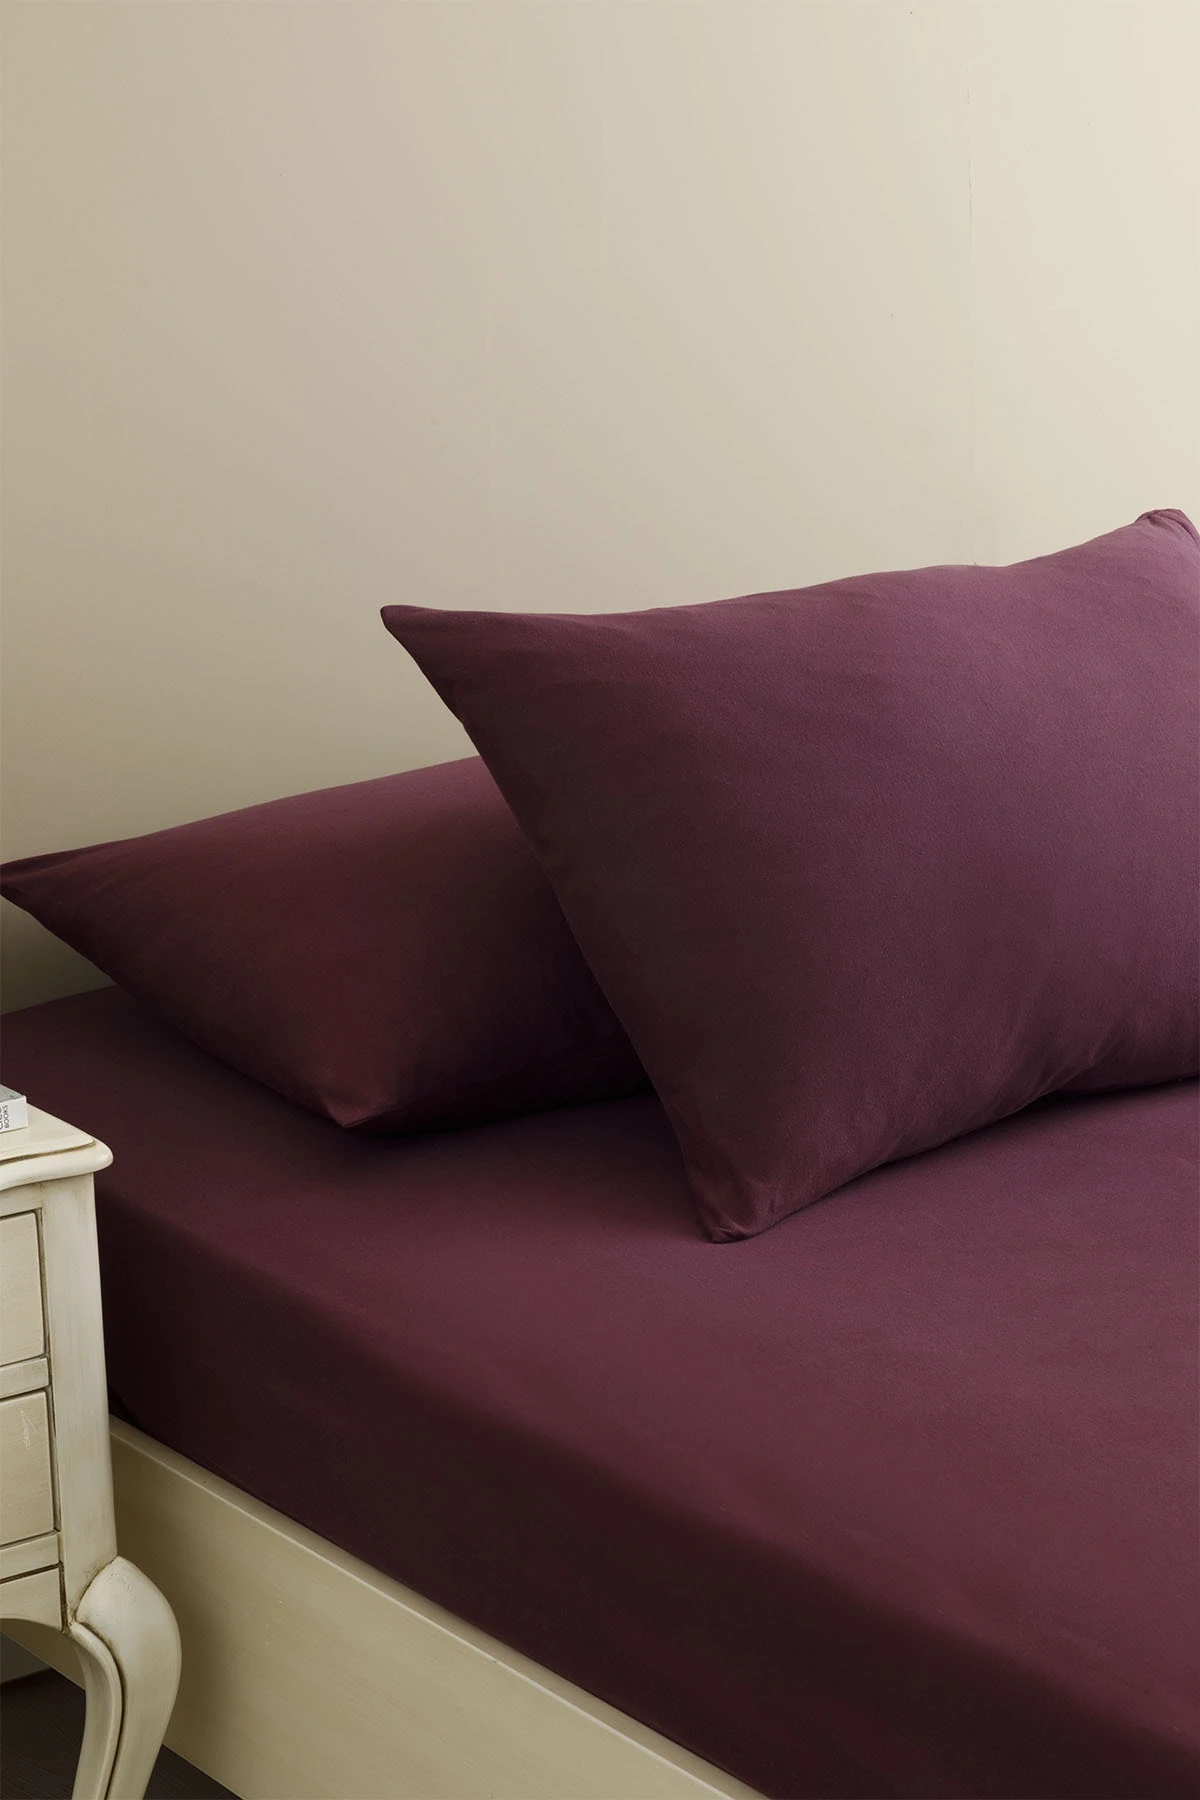 Sábanas ajustadas de de sábanas de 180x200 Cm, liso, Borgoña y cereza|Hoja| - AliExpress